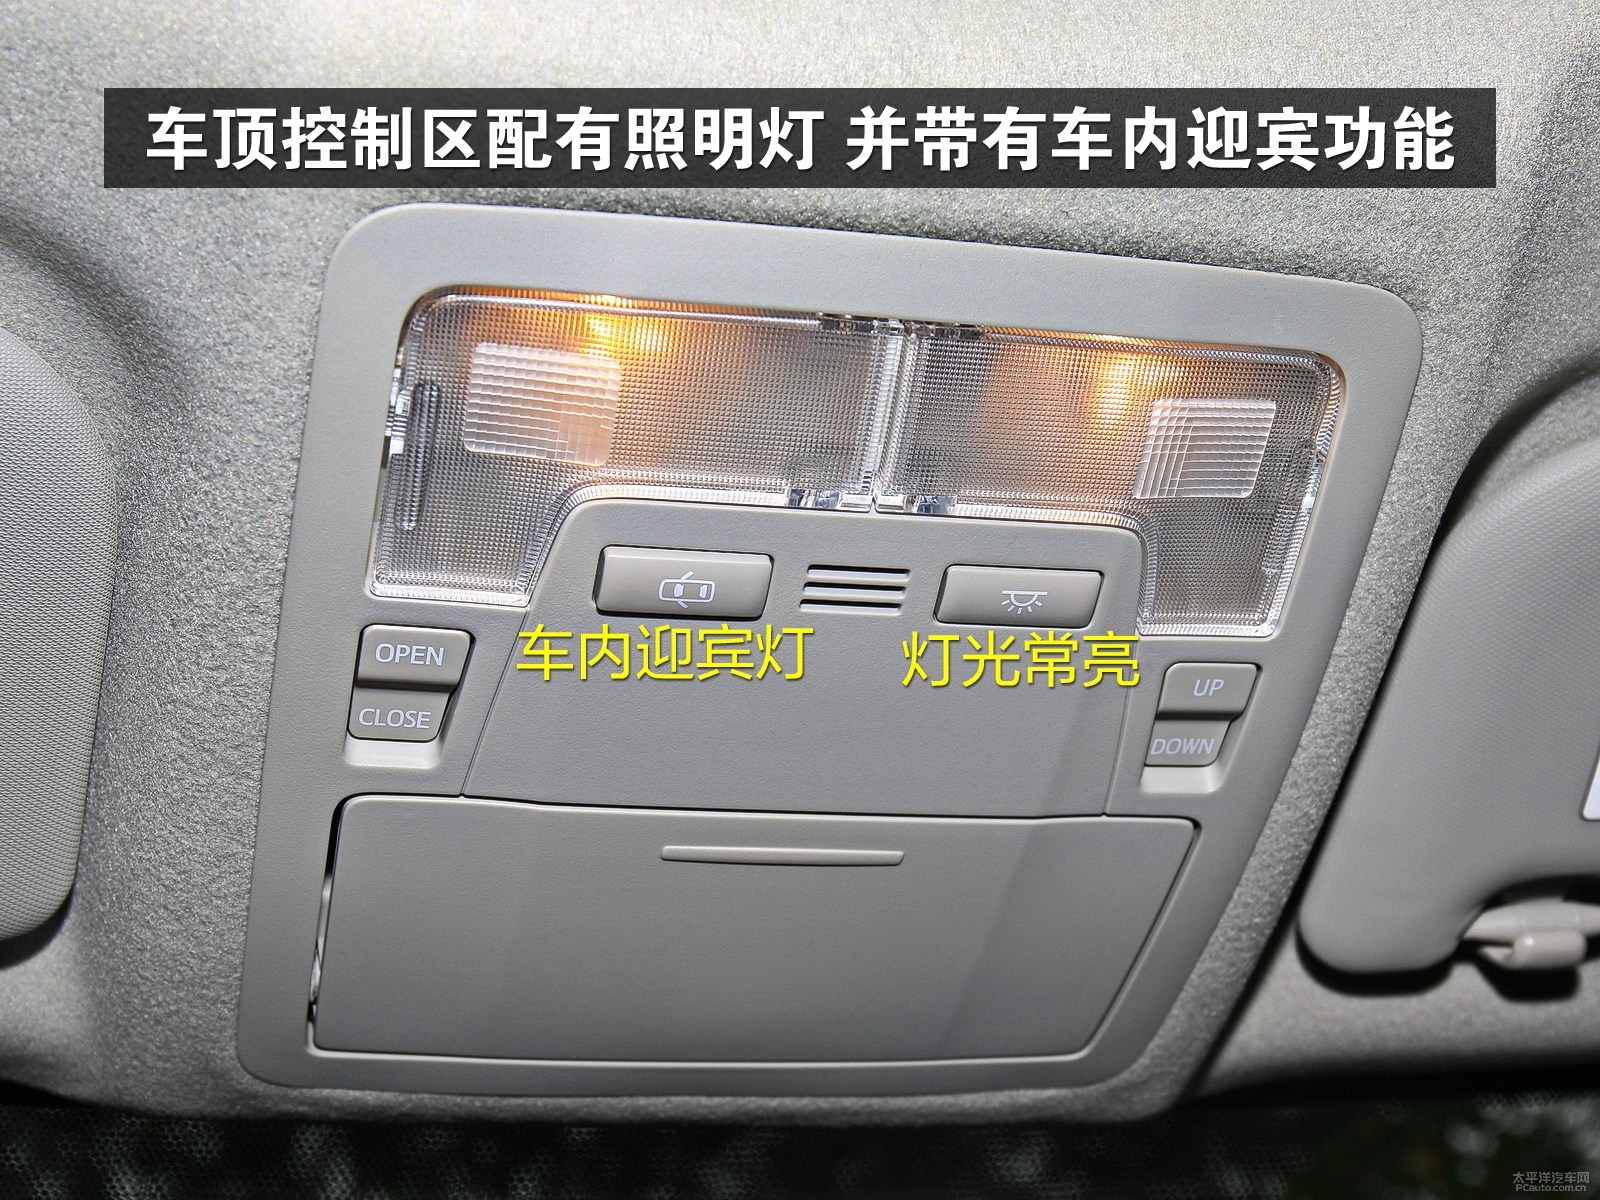 开启车内迎宾灯开关,每次打开车门时照明灯会自行点亮.